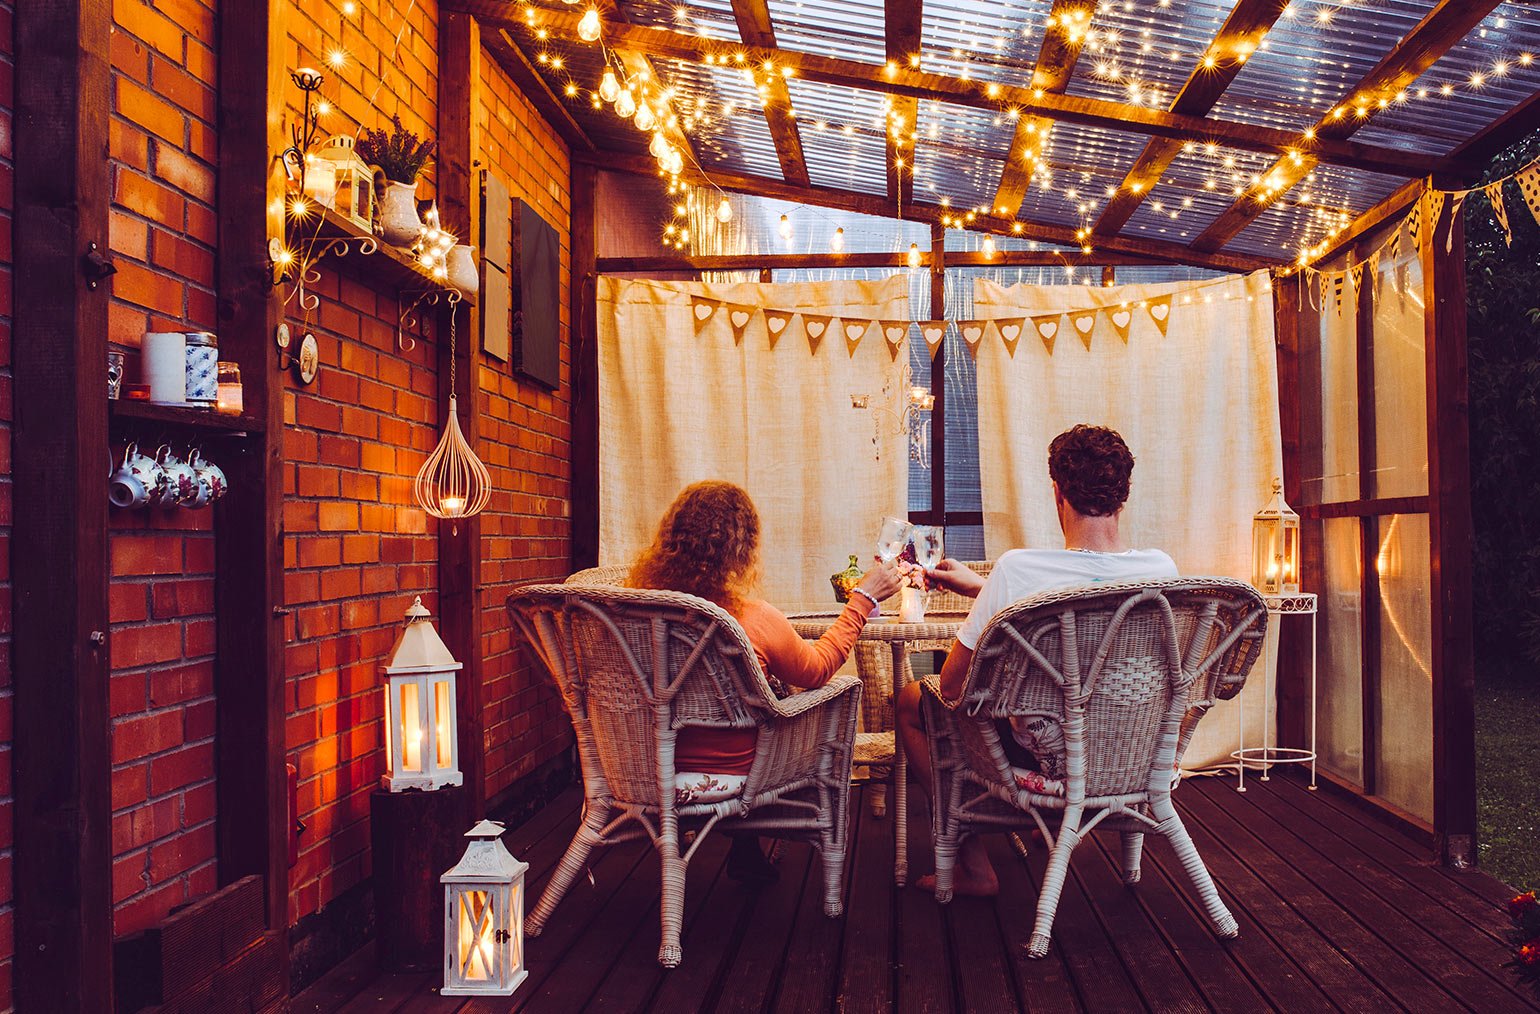 Éclairage du balcon : 6 idées lumineuses pour profiter de son balcon - Lumihome